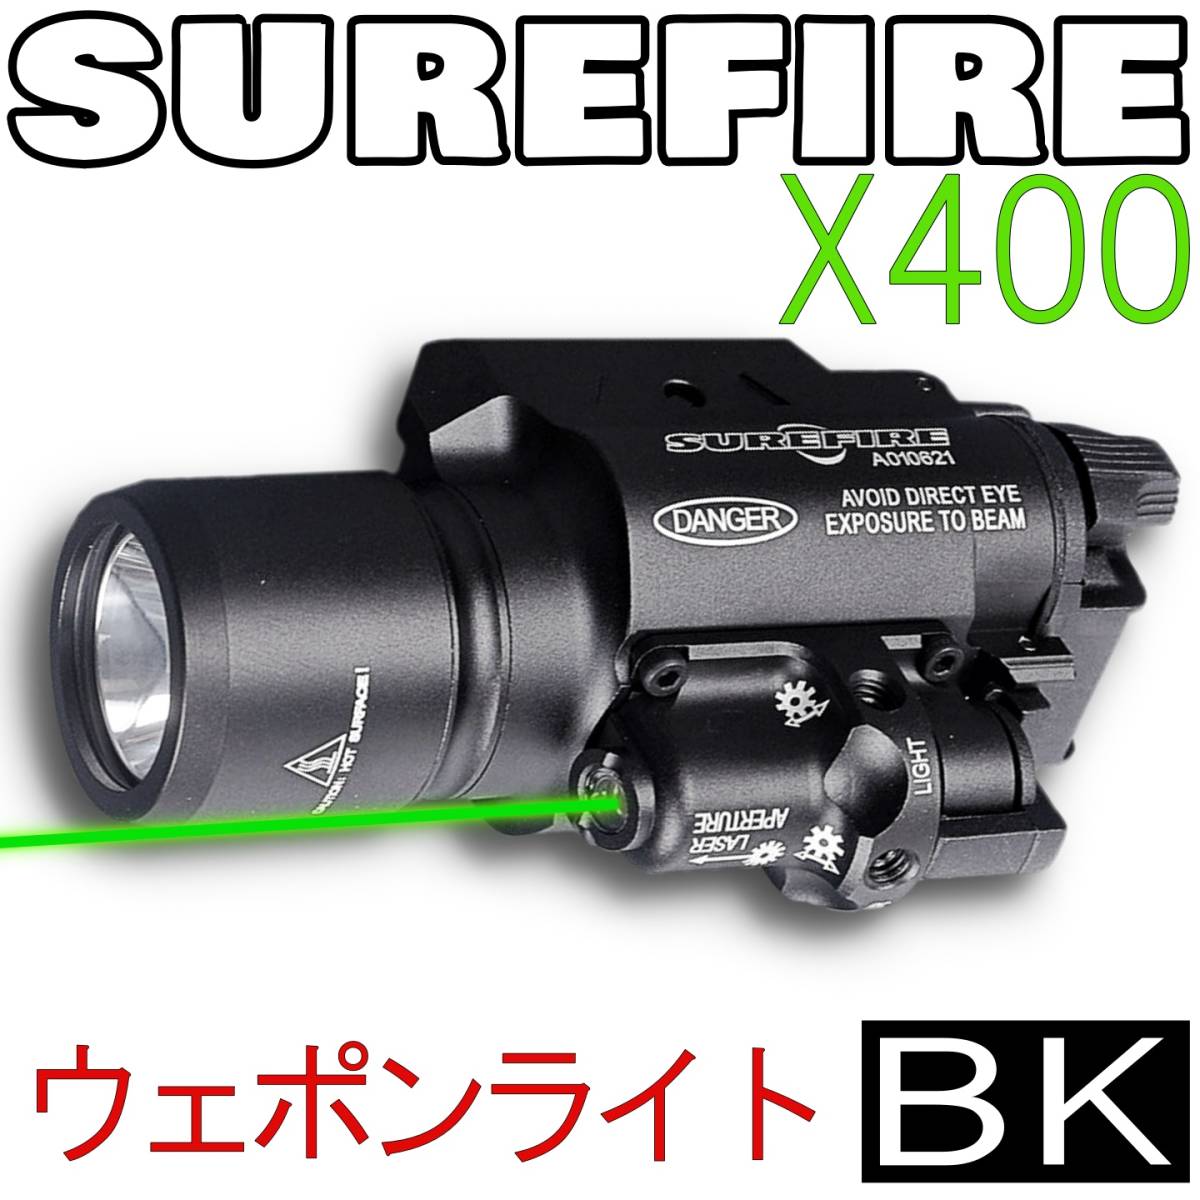 SUREFIREタイプX400 ウェポンライト BK グリーンポインター シュア 